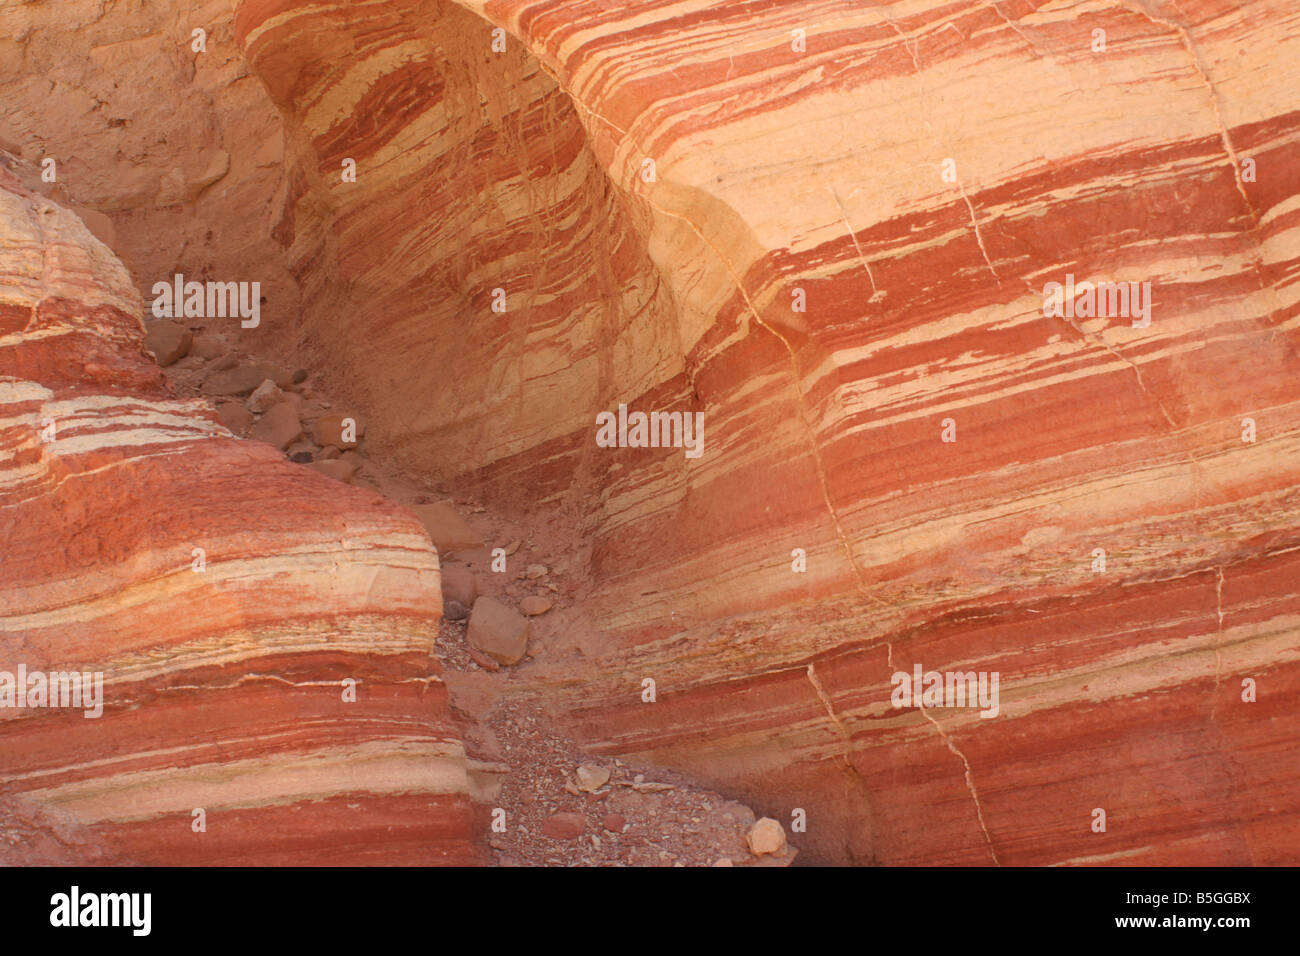 Israël Amir mountain Géologie couches dans le rock Banque D'Images